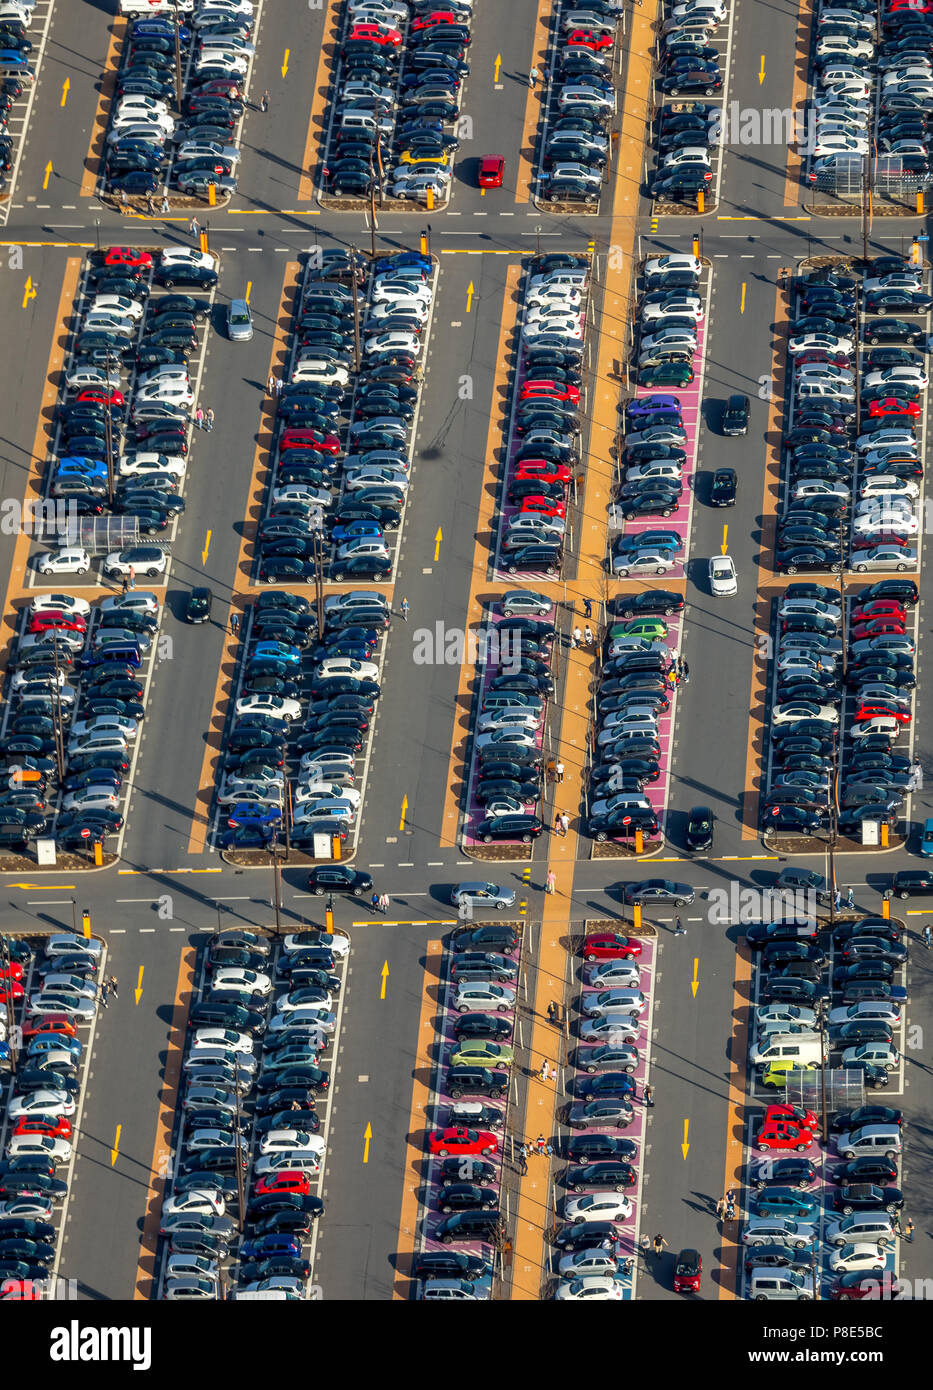 Vista aerea, piena auto park con indicazioni stradali, centro commerciale Ruhr Park, Bochum, la zona della Ruhr, Nord Reno-Westfalia, Germania Foto Stock